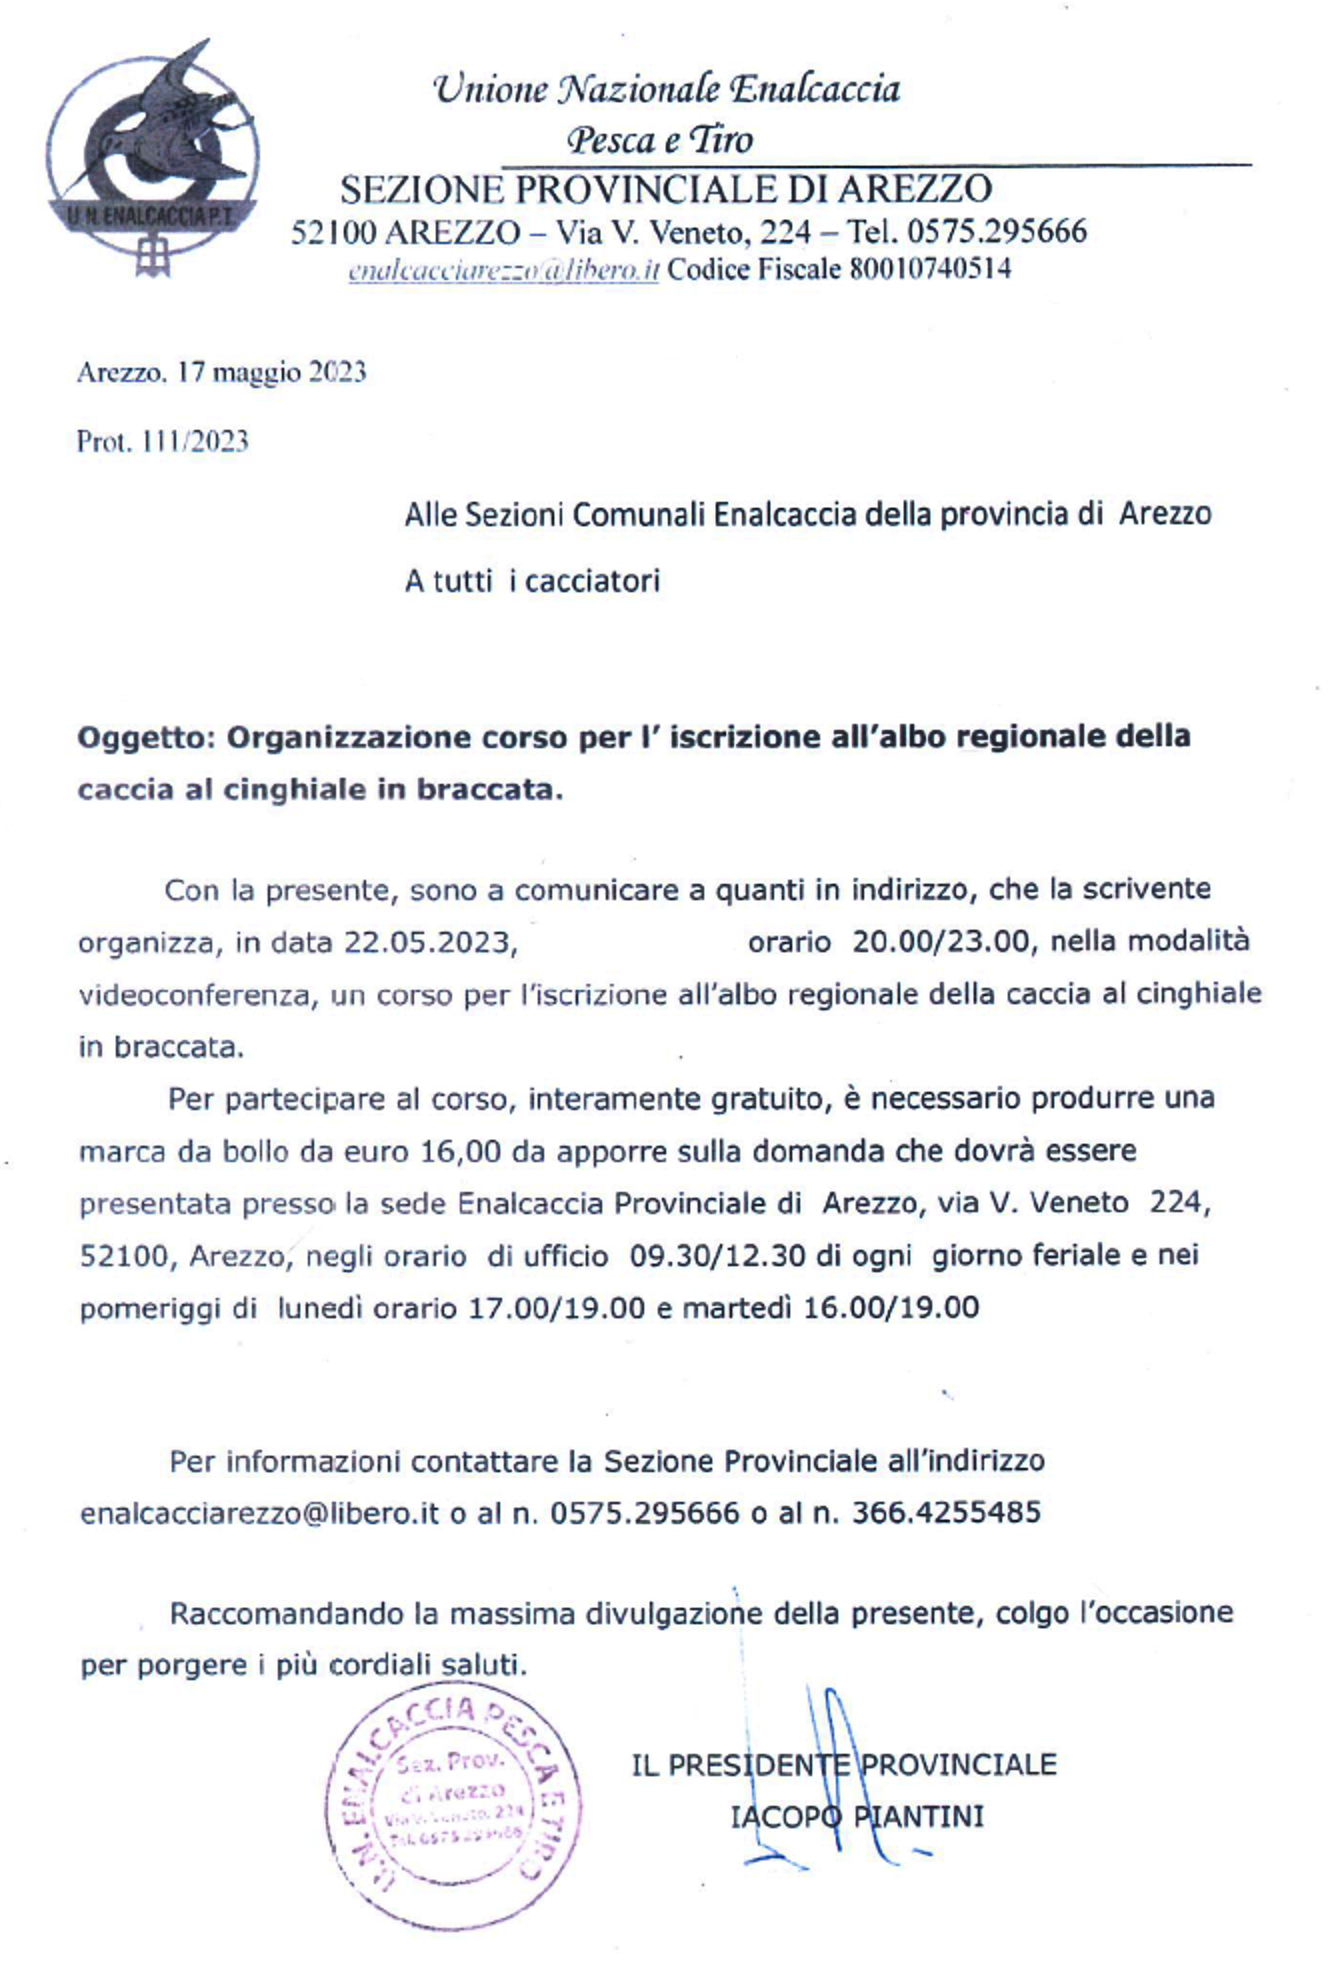 Corso per l'iscrizione all'Albo Regionale per la Caccia al Cinghiale in Braccata - (22/5/2023)